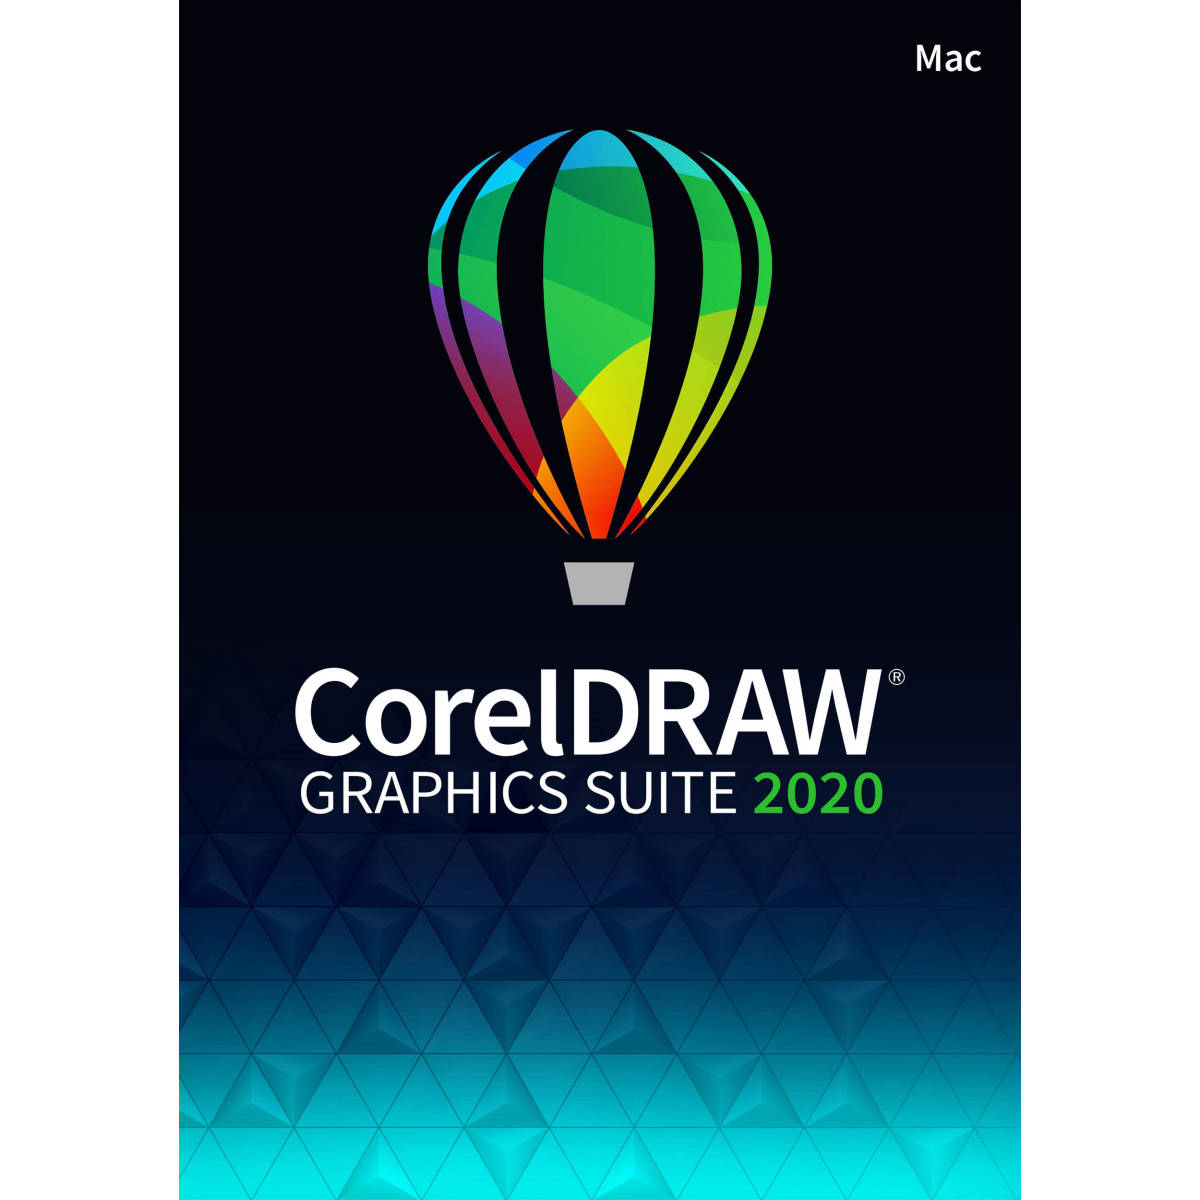 正規品 CorelDRAW Graphics Suite 2020 Mac 正規アカデミック版 パッケージ版 日本語 即決☆送料無料/製品登録までサポート